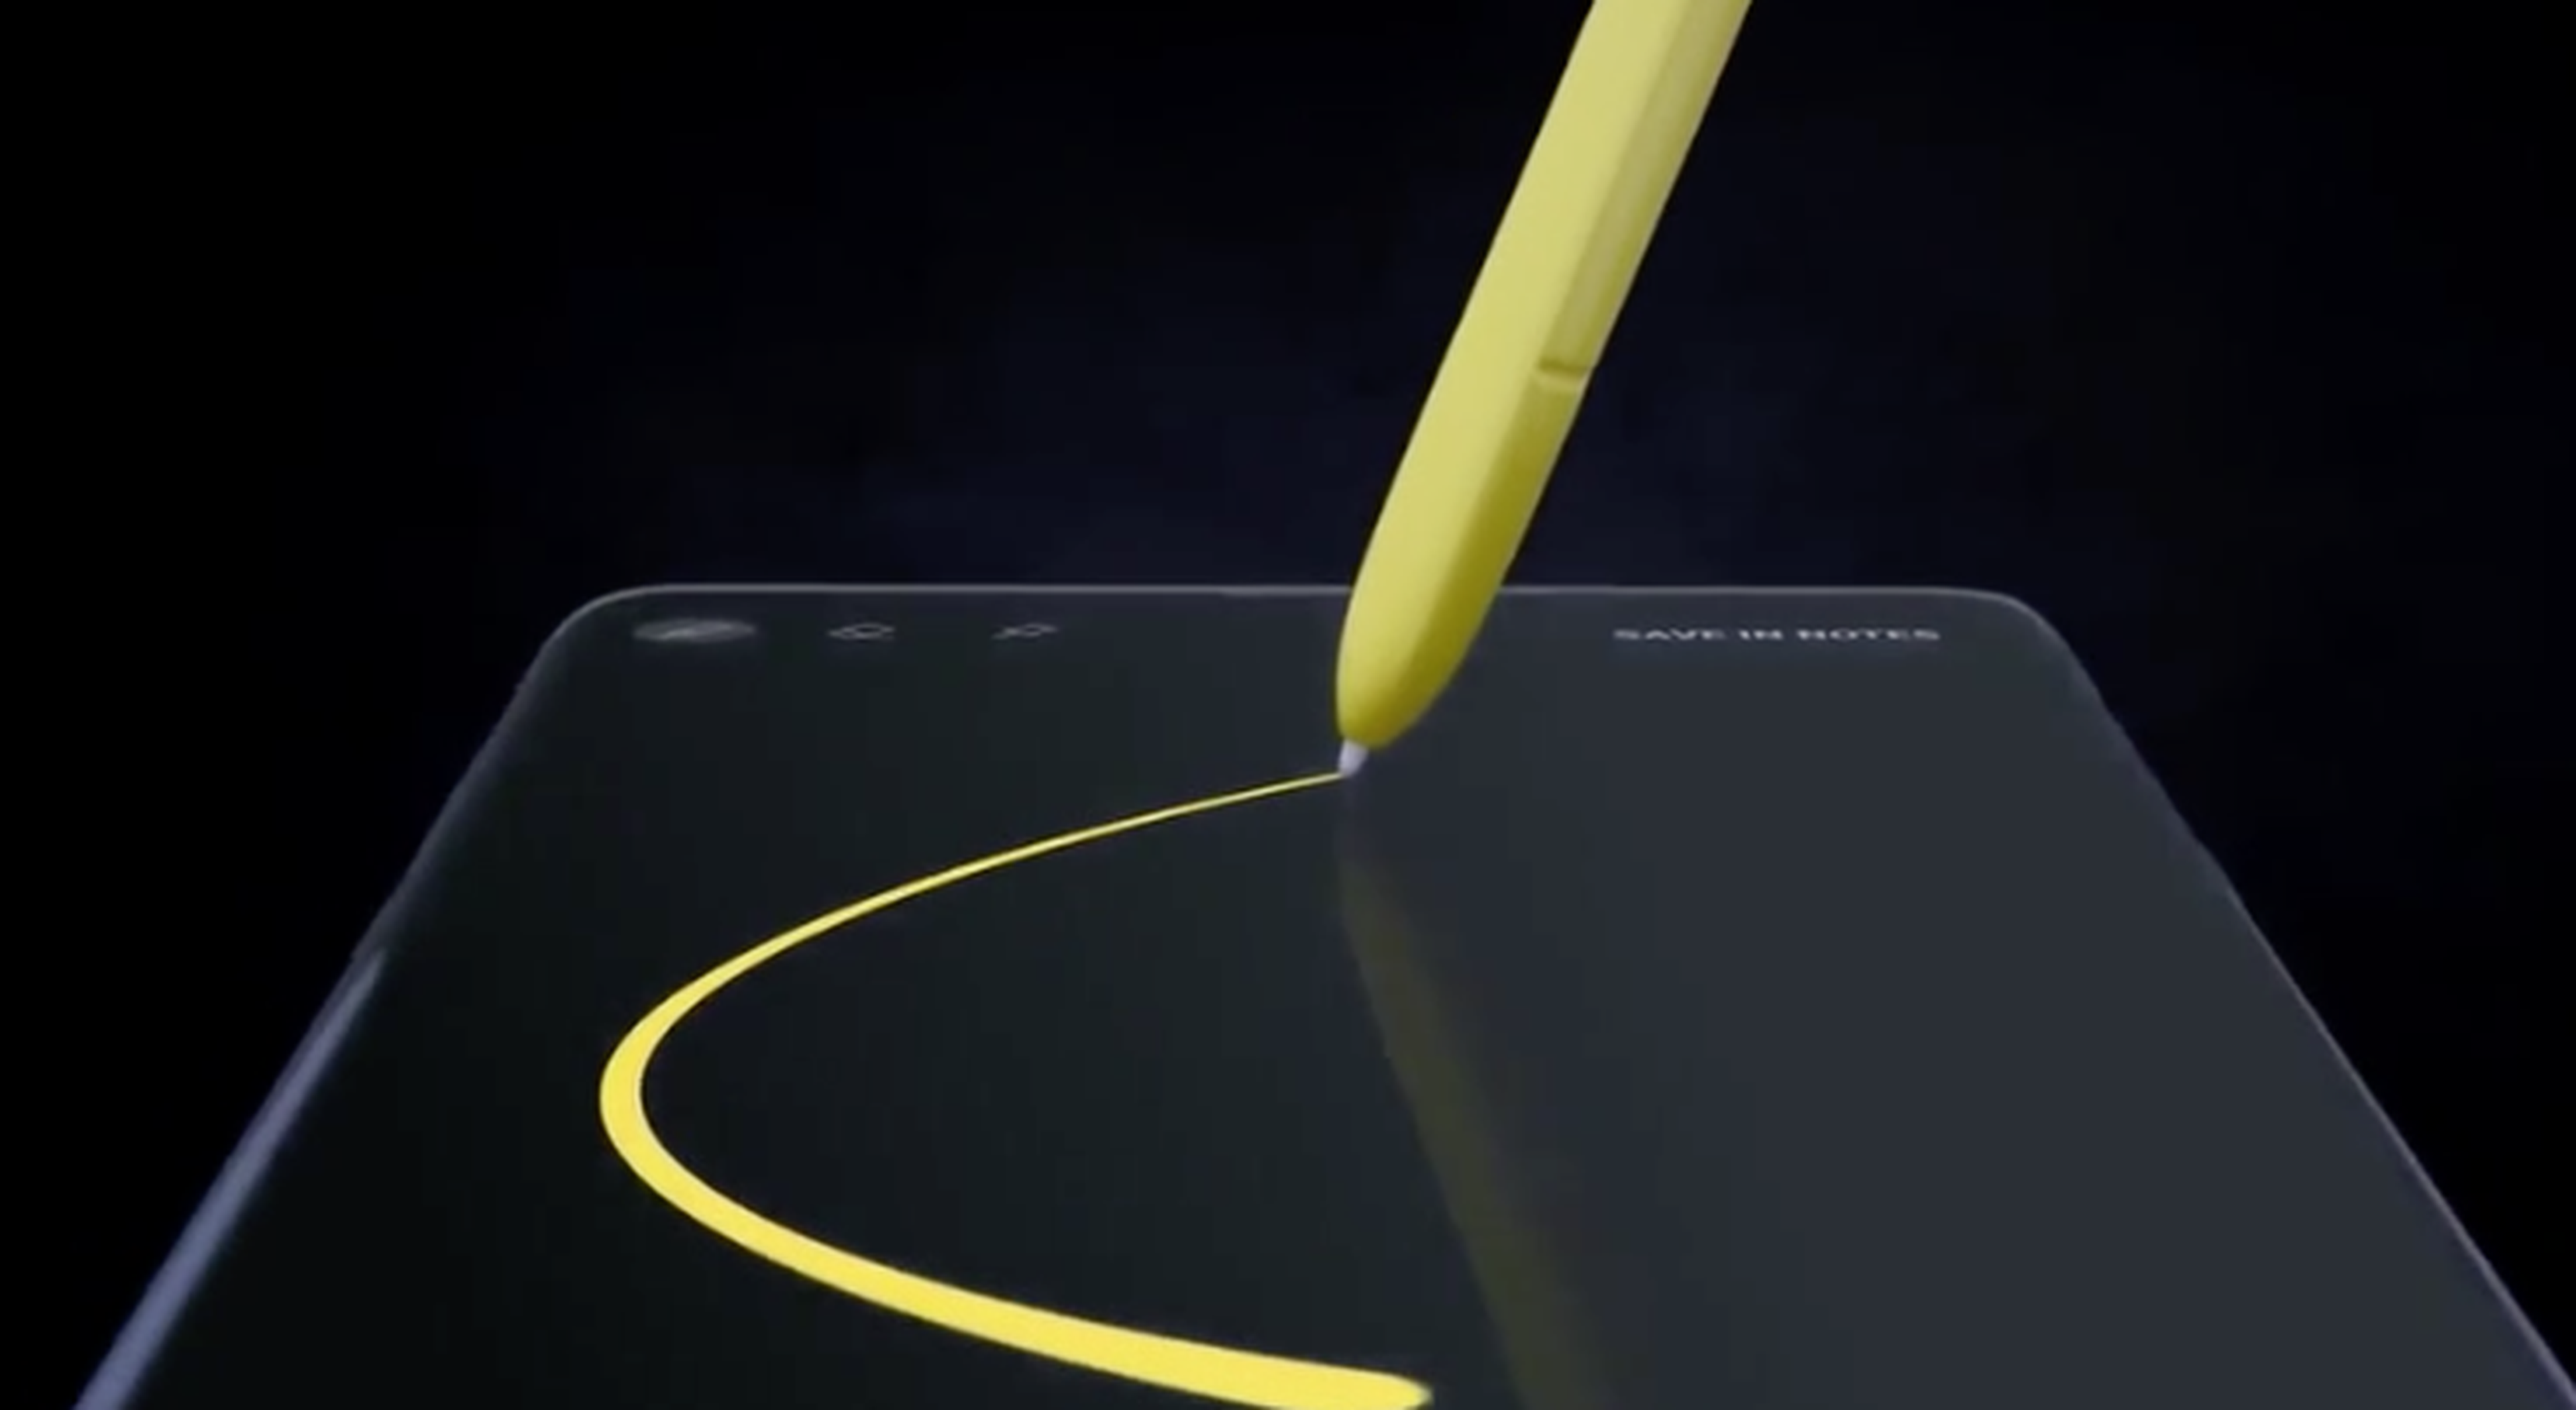 Captura de pantalla de vídeo filtrado del Samsung Galaxy Note 9